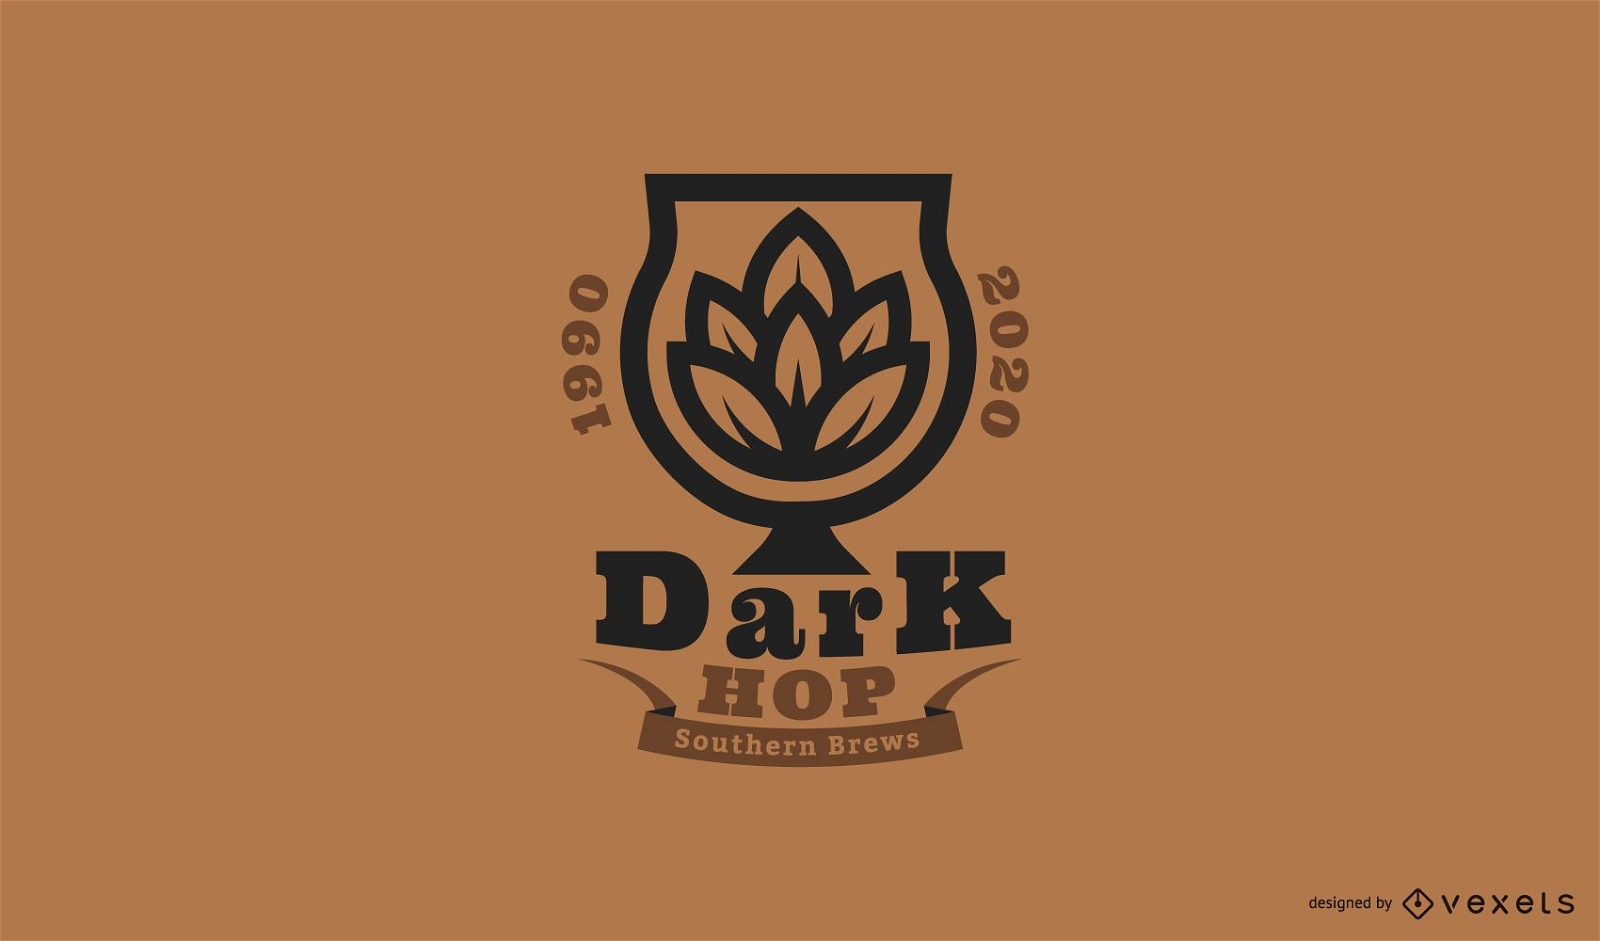 Modelo de logotipo de cerveja dark hop